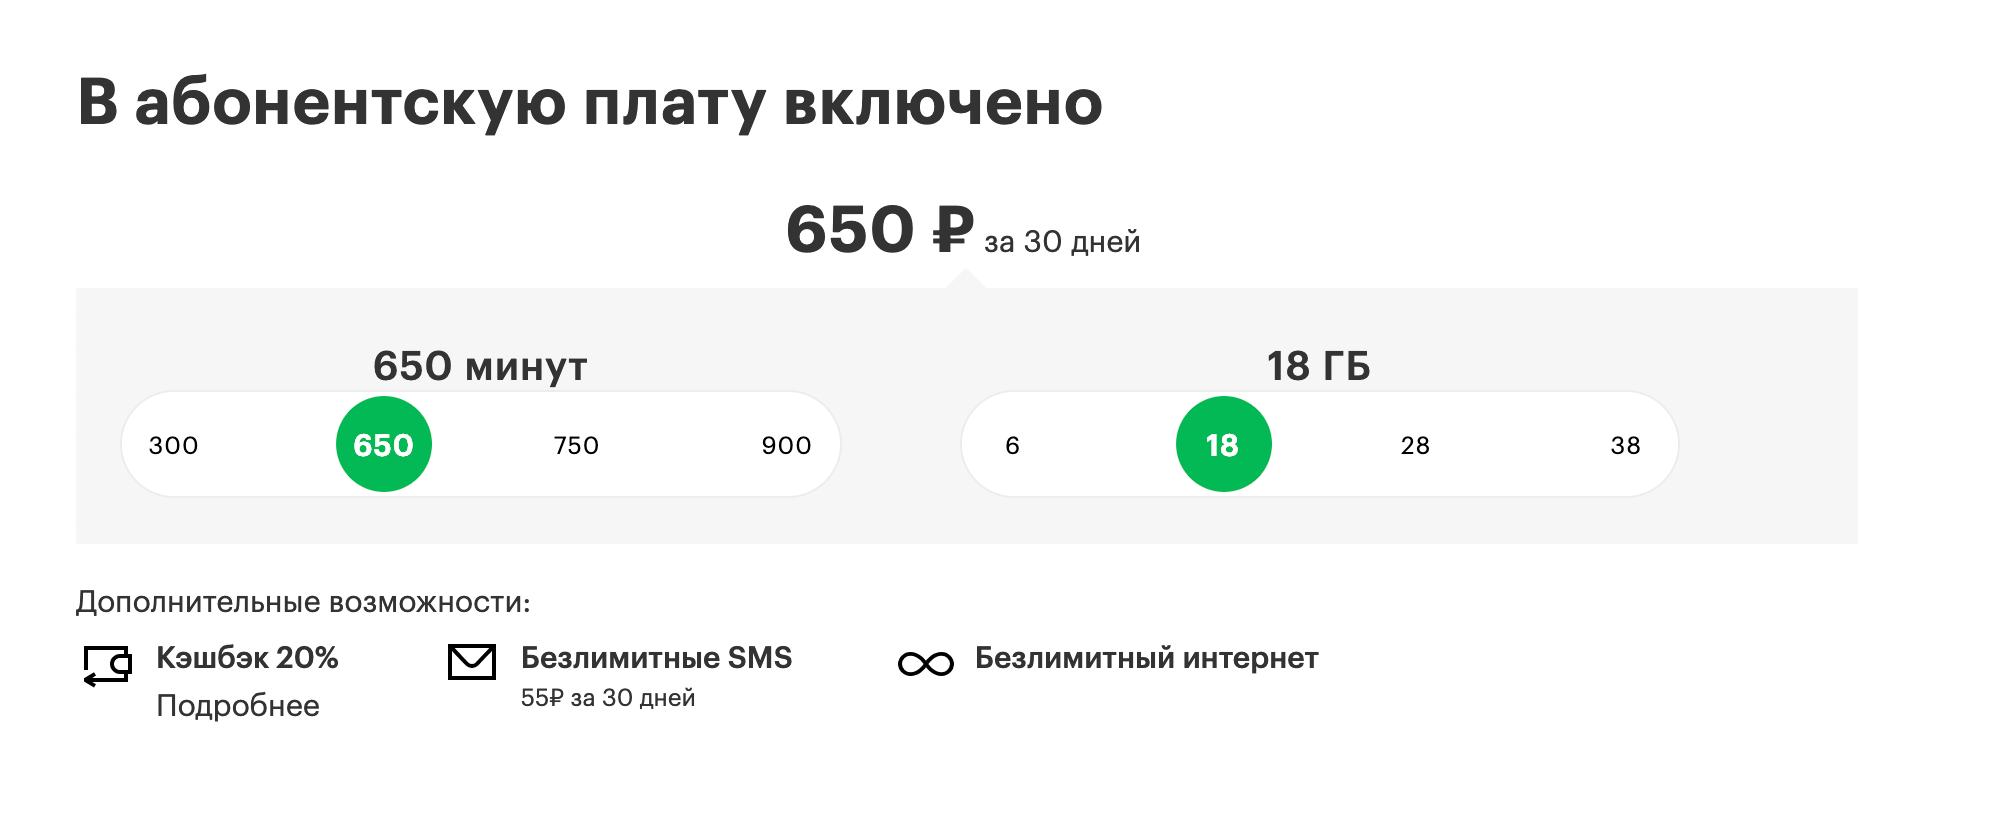 За 600 р. в месяц москвичам доступны 15 Гб и 600 минут